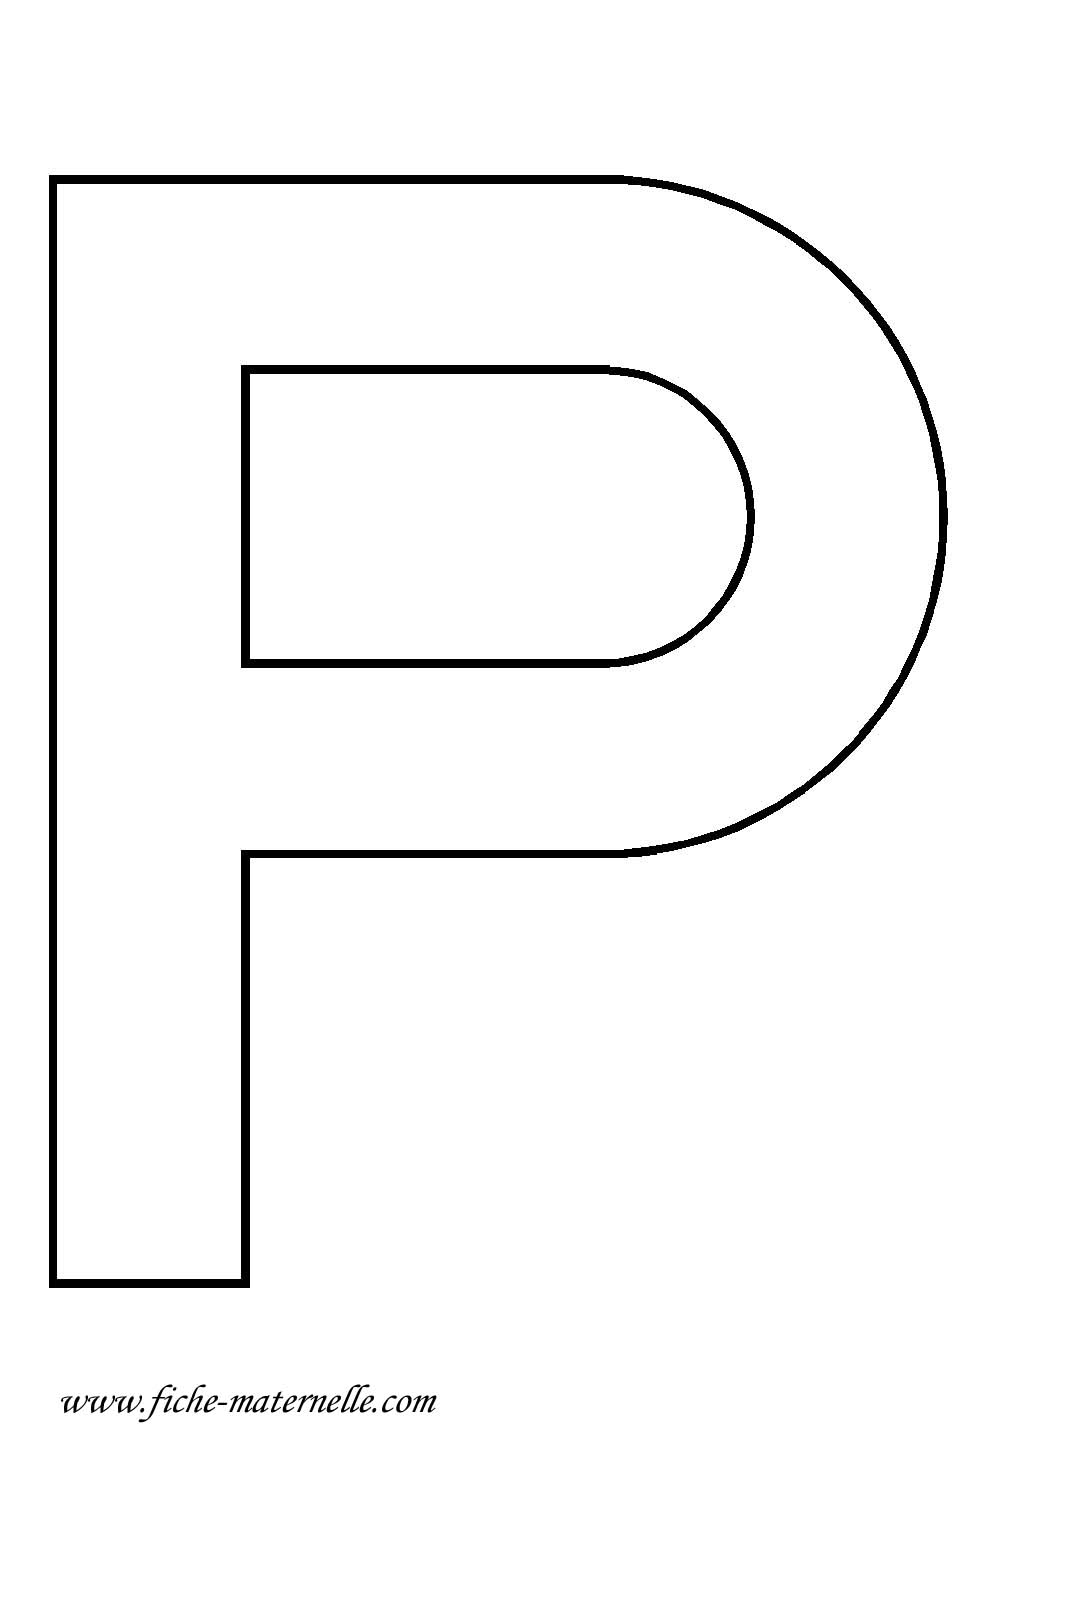 image de la lettre p